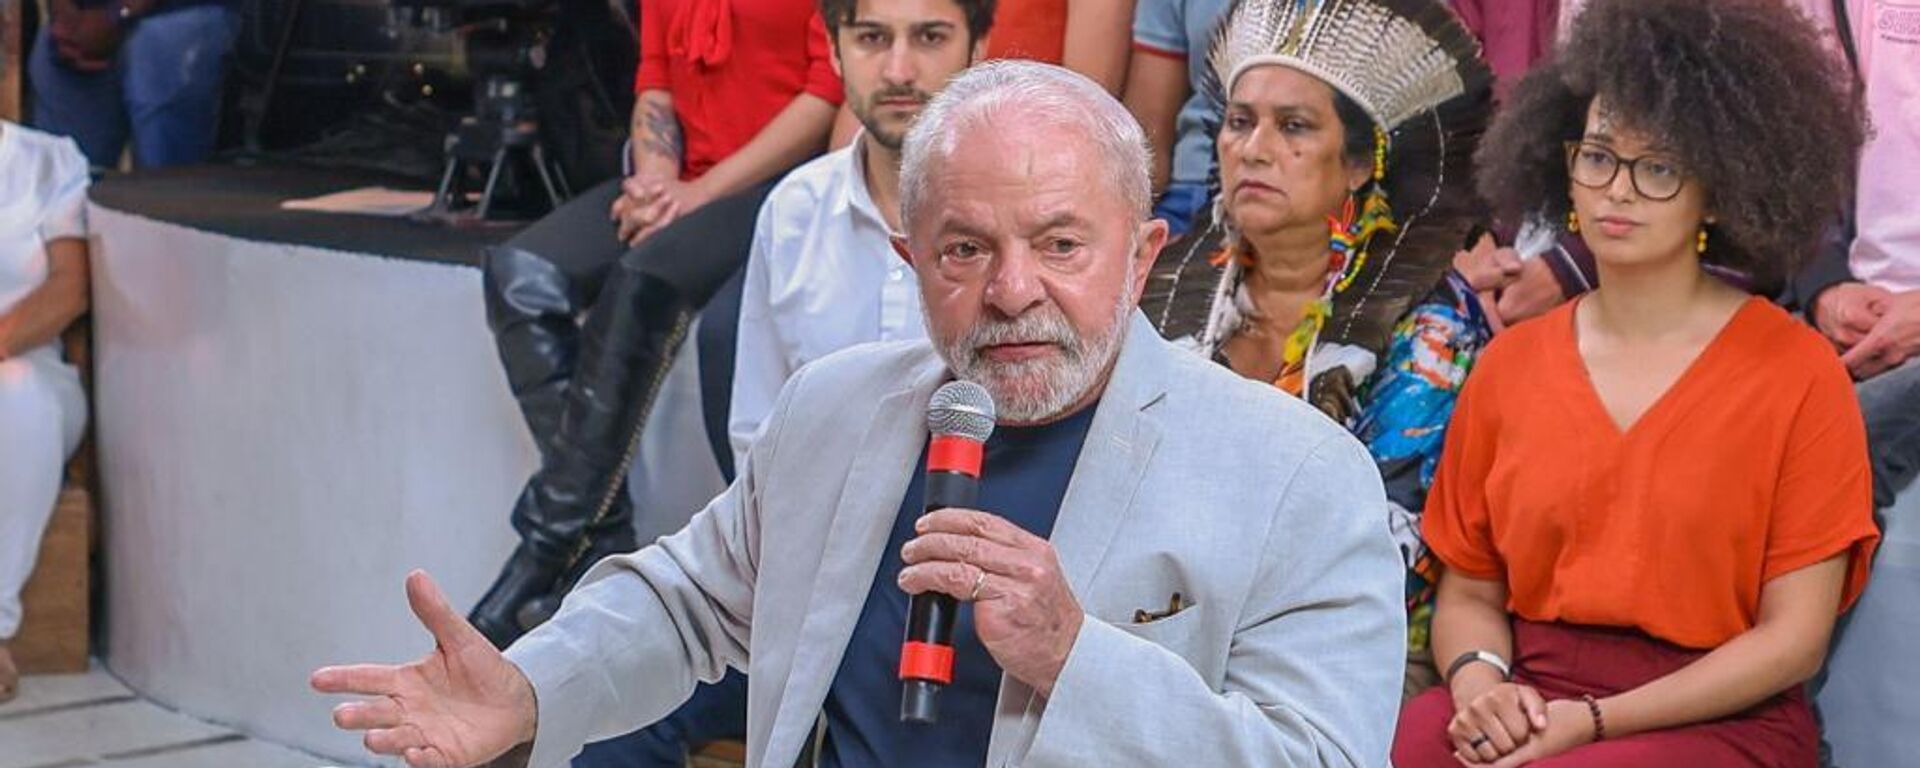 O ex-presidente Luiz Inácio Lula da Silva (PT) participa de uma conversa com eleitores, em transmissão ao vivo em suas redes sociais, em 25 de outubro de 2022 - Sputnik Brasil, 1920, 25.10.2022